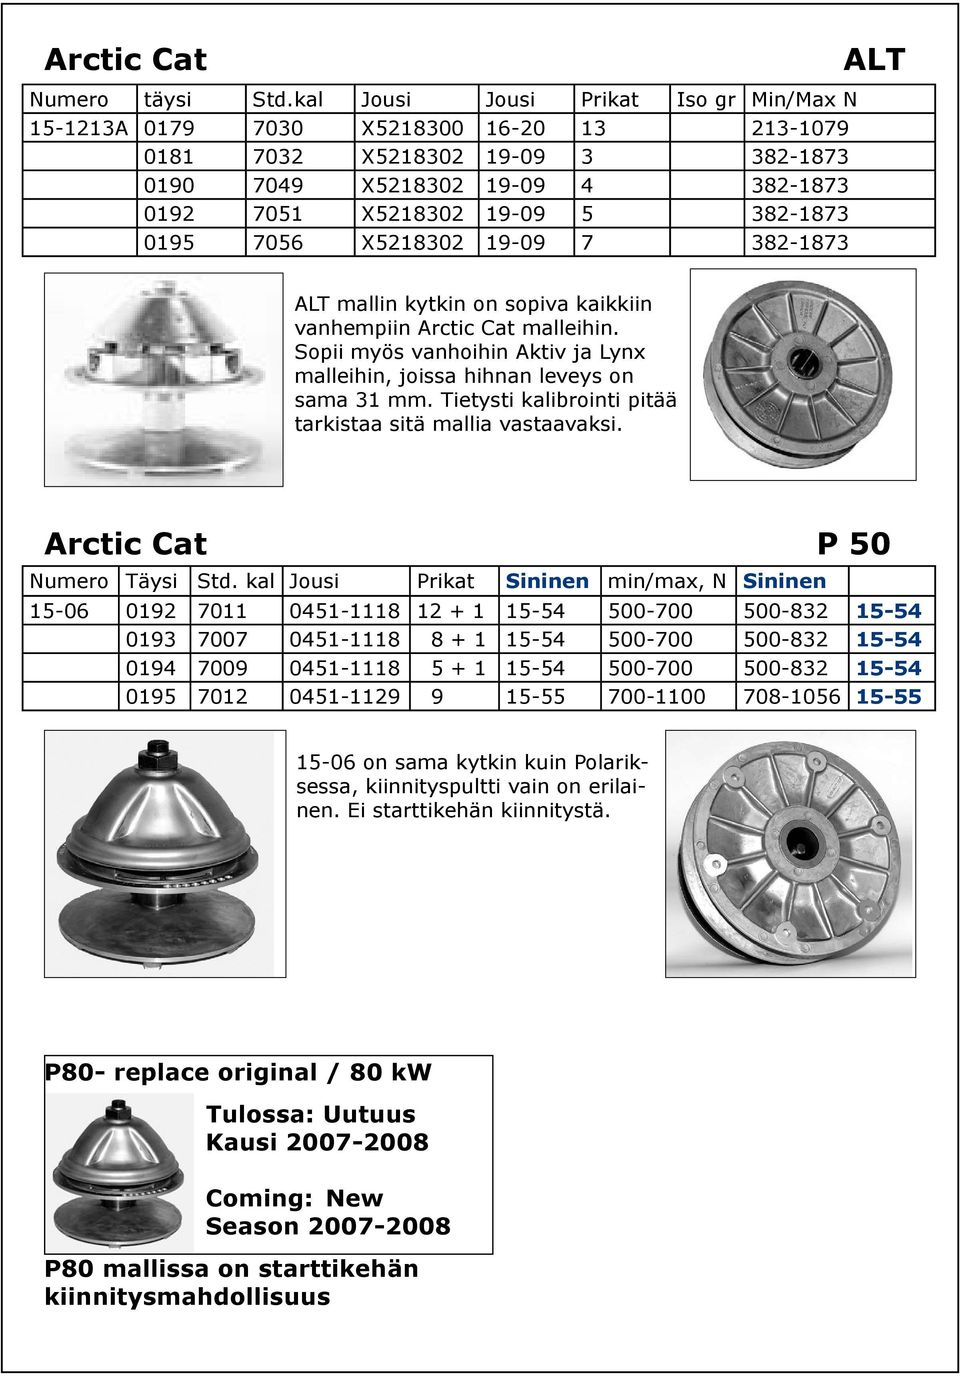 7056 X5218302 19-09 7 382-1873 ALT ALT mallin kytkin on sopiva kaikkiin vanhempiin Arctic Cat malleihin. Sopii myös vanhoihin Aktiv ja Lynx malleihin, joissa hihnan leveys on sama 31 mm.